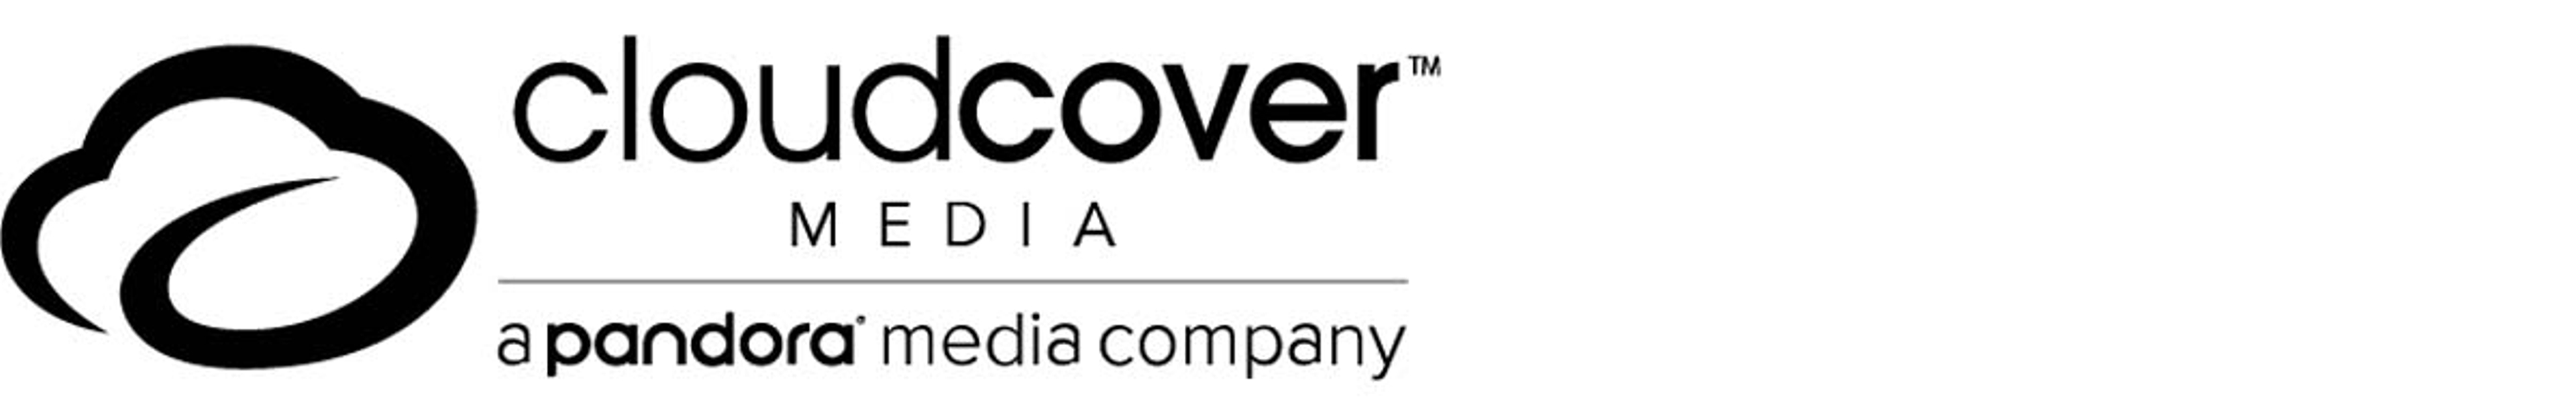 CloudCover Musics logo